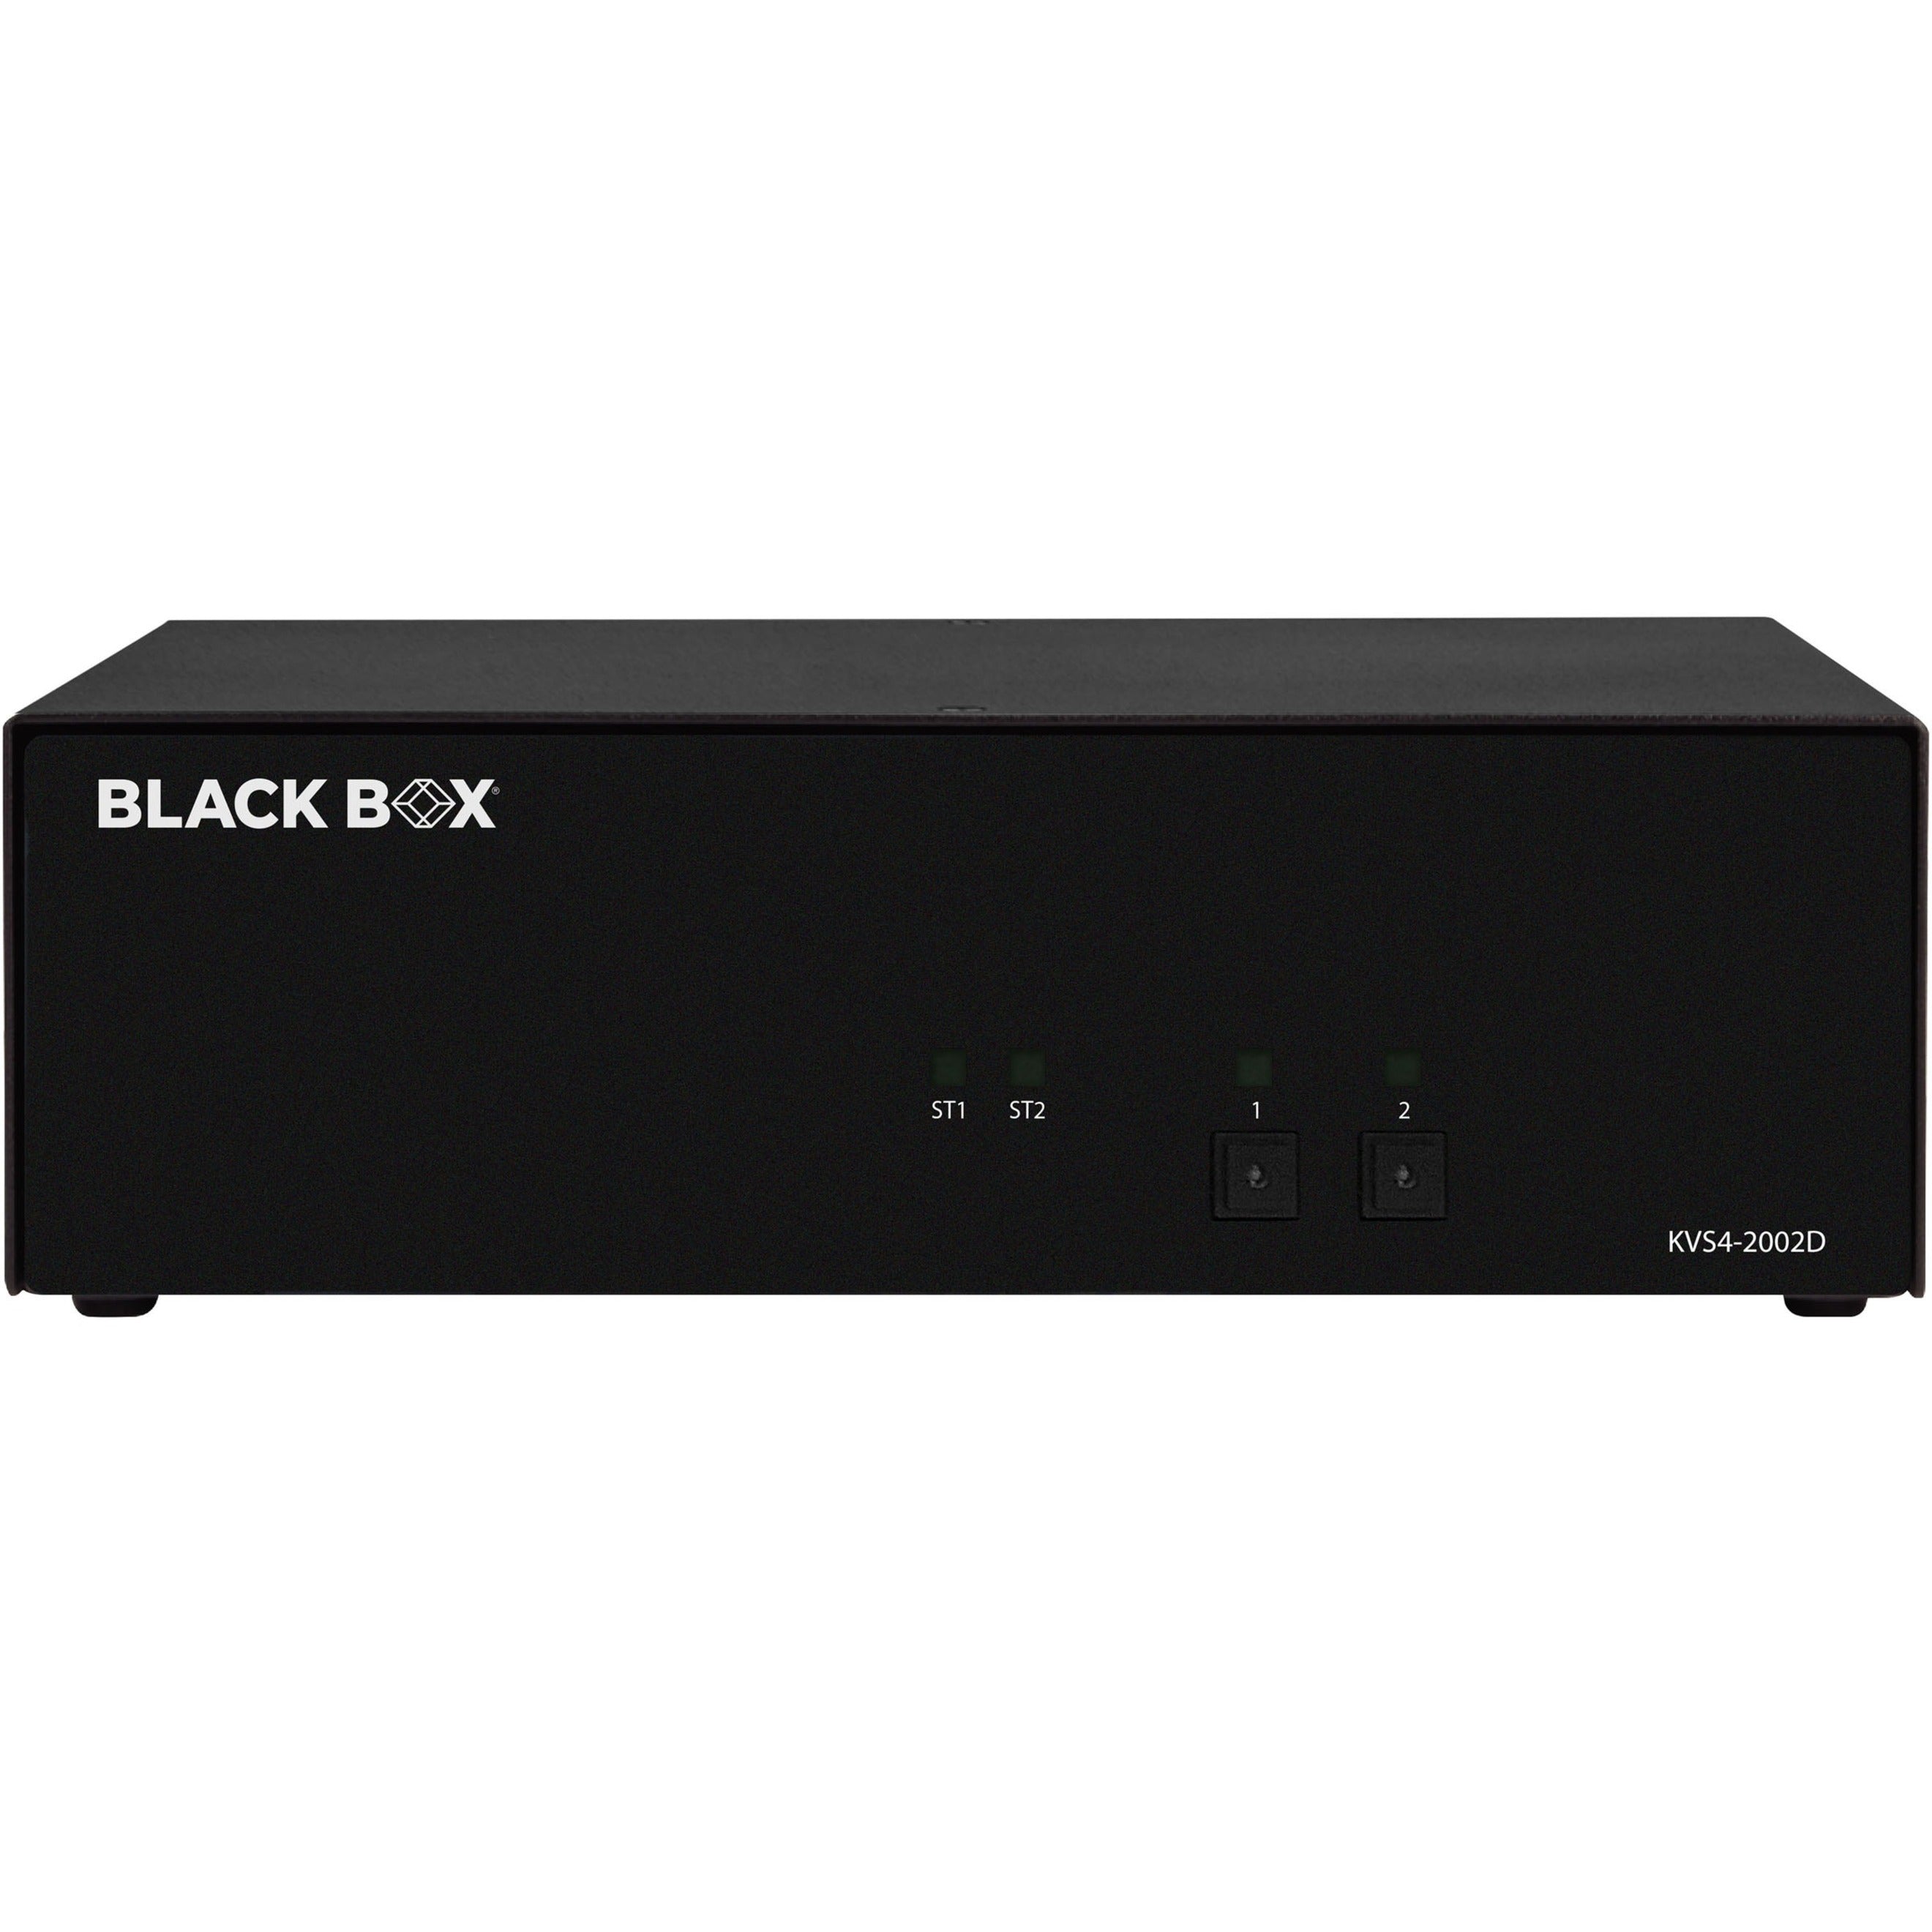 ブラックボックス KVS4-2002D セキュアKVMスイッチ - DVI-I、2コンピューター対応、2ローカルユーザー対応 - ブランド名: ブラックボックス - ブランド名の翻訳: 黒箱